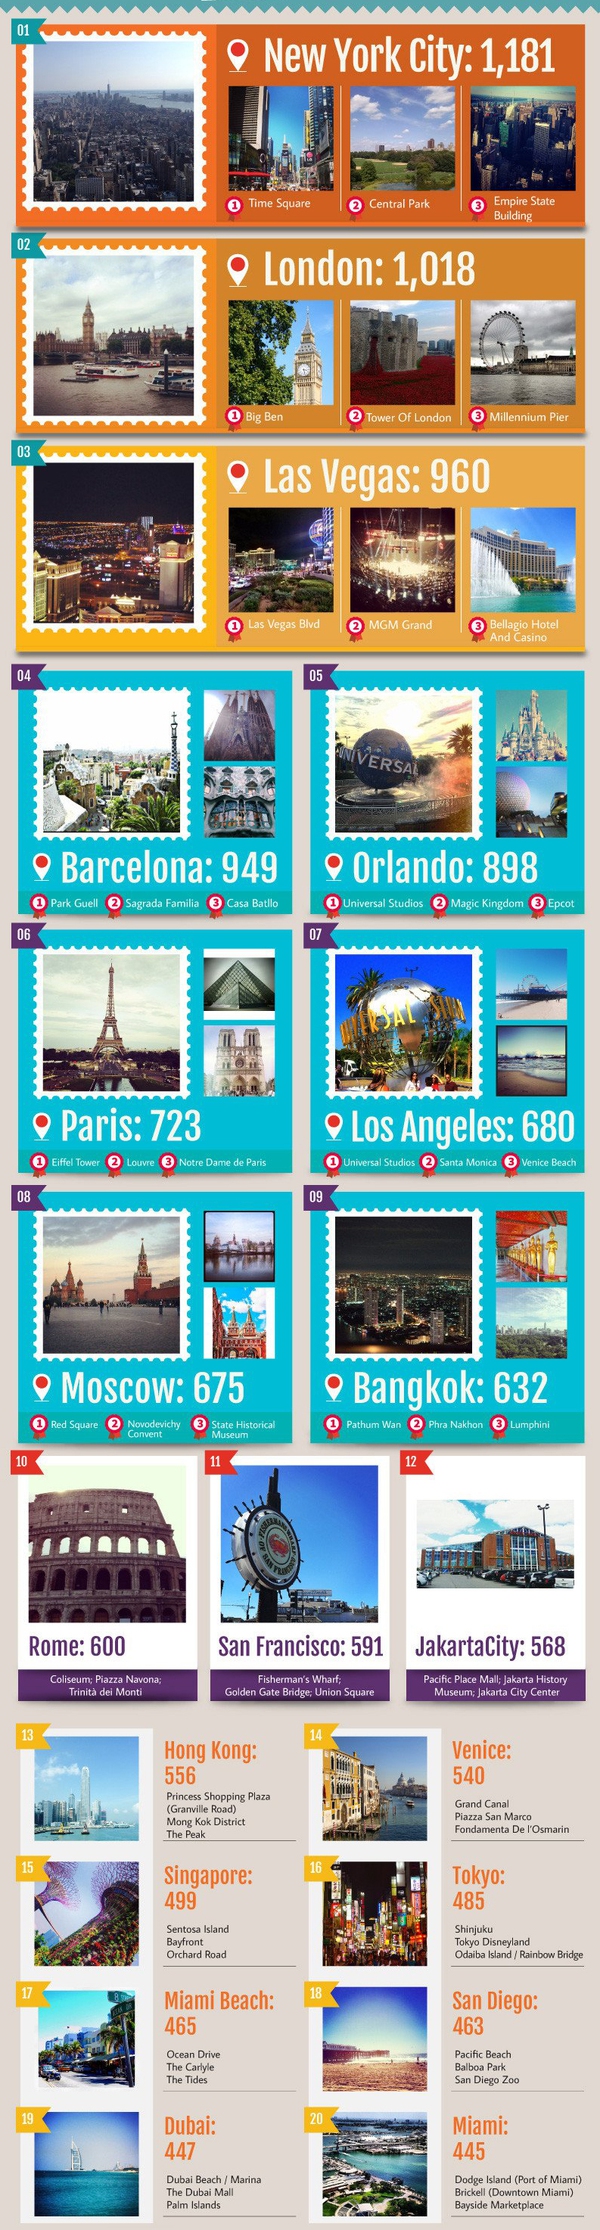 Khám phá 20 địa điểm "hot" nhất trên Instagram 1